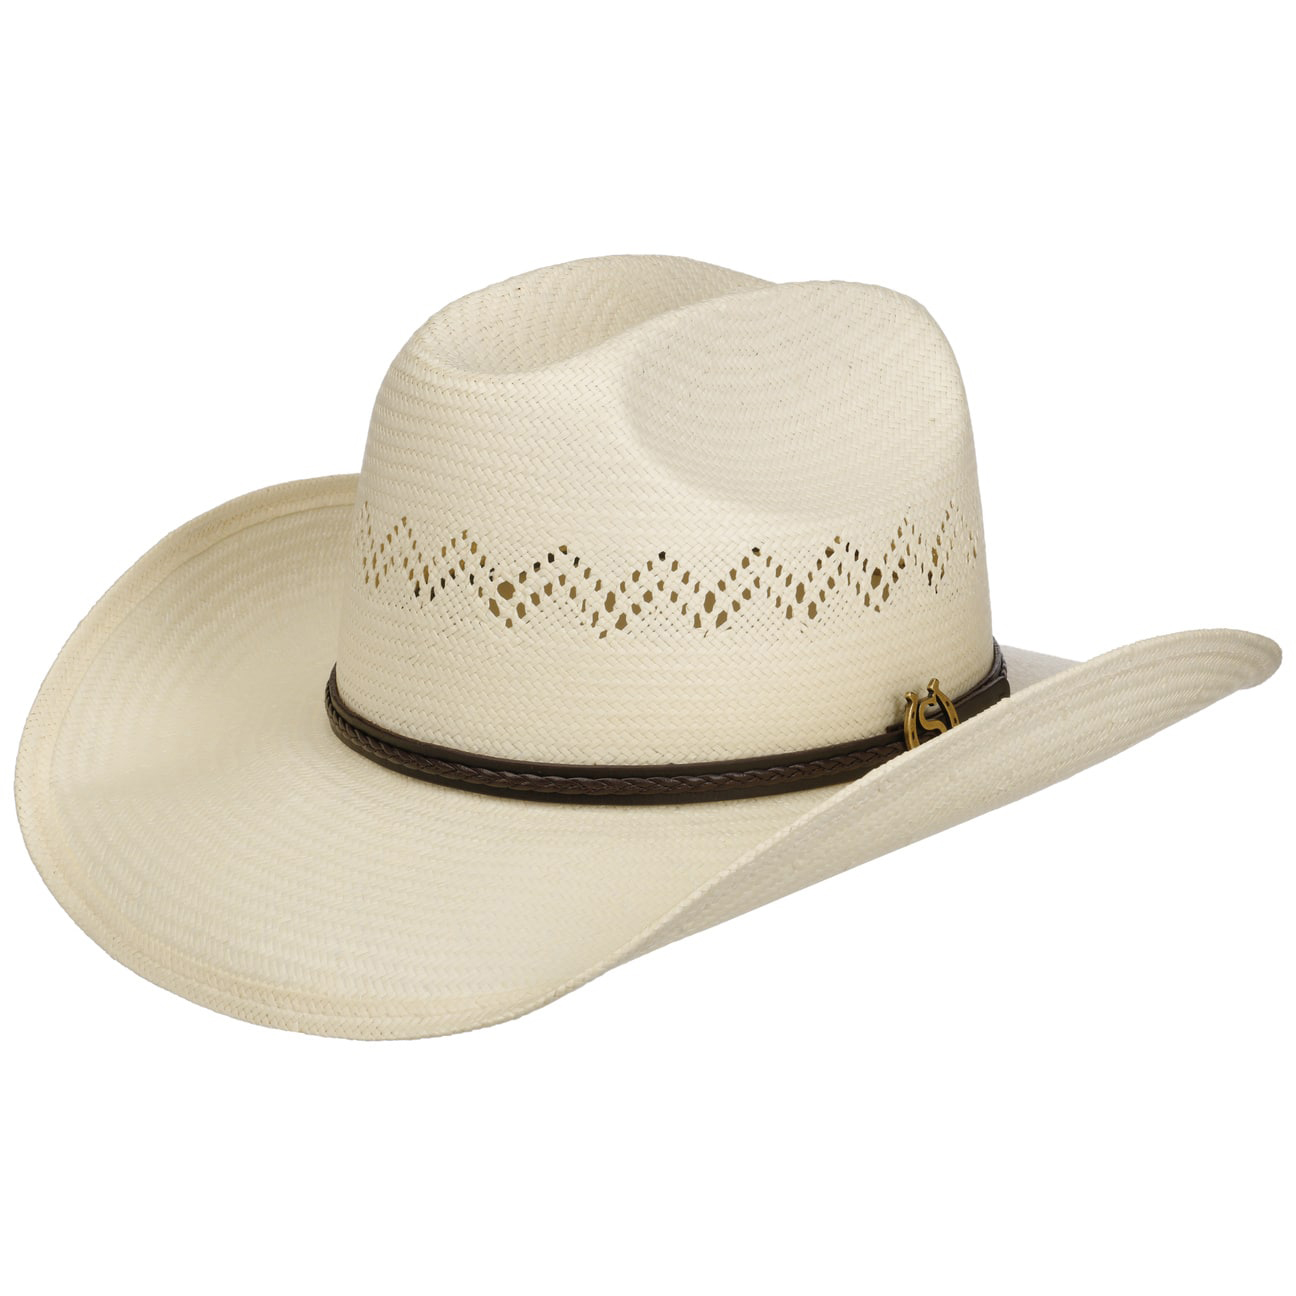 Stetson - Monterrey Western Toyo Straw Hat - White